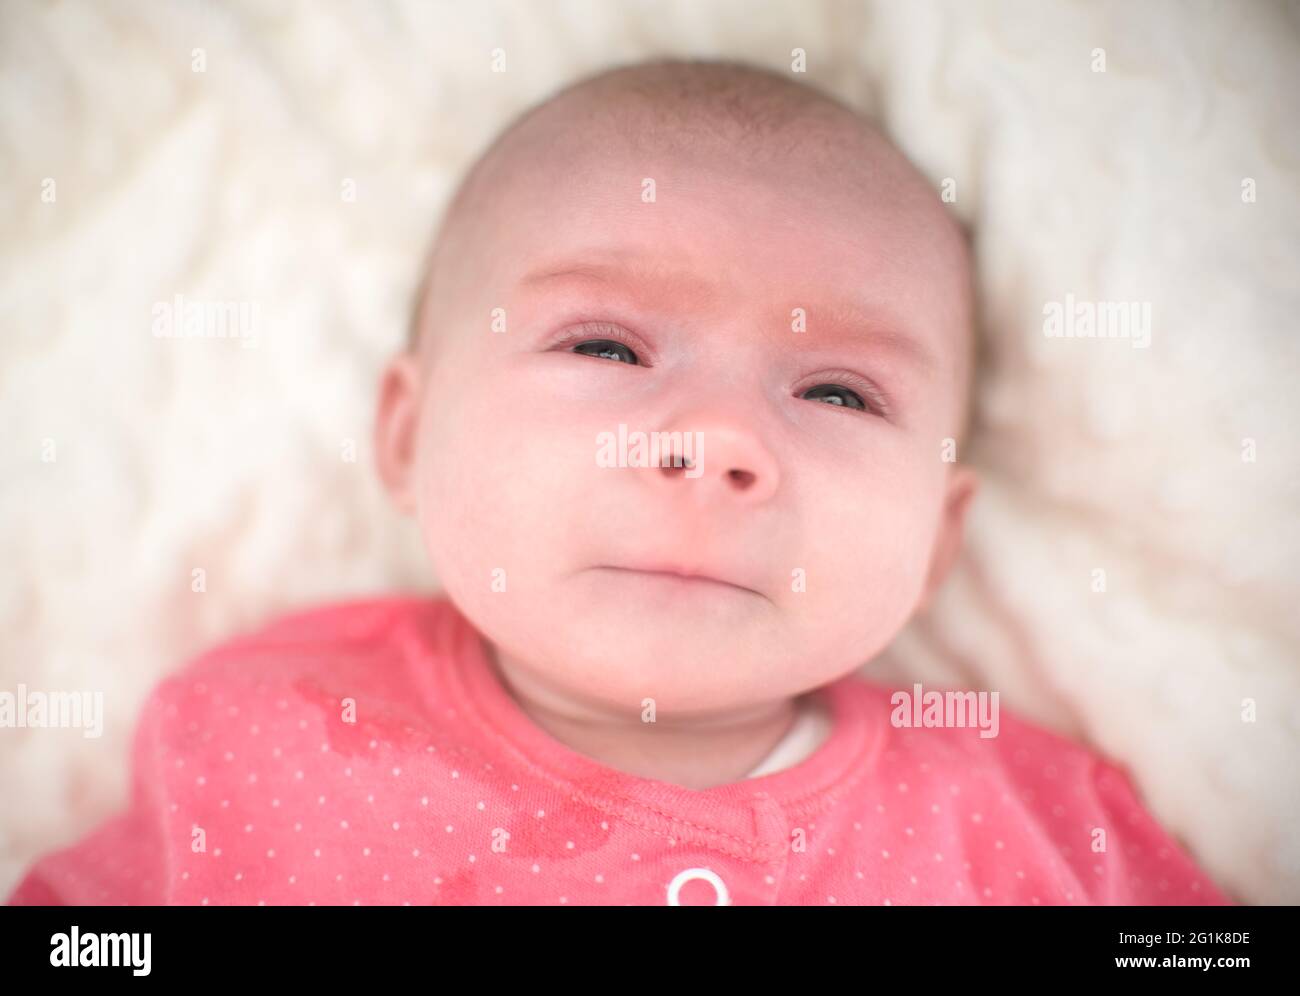 Neugeborene mit einem sehr traurigen Gesicht beginnen zu weinen Stockfoto